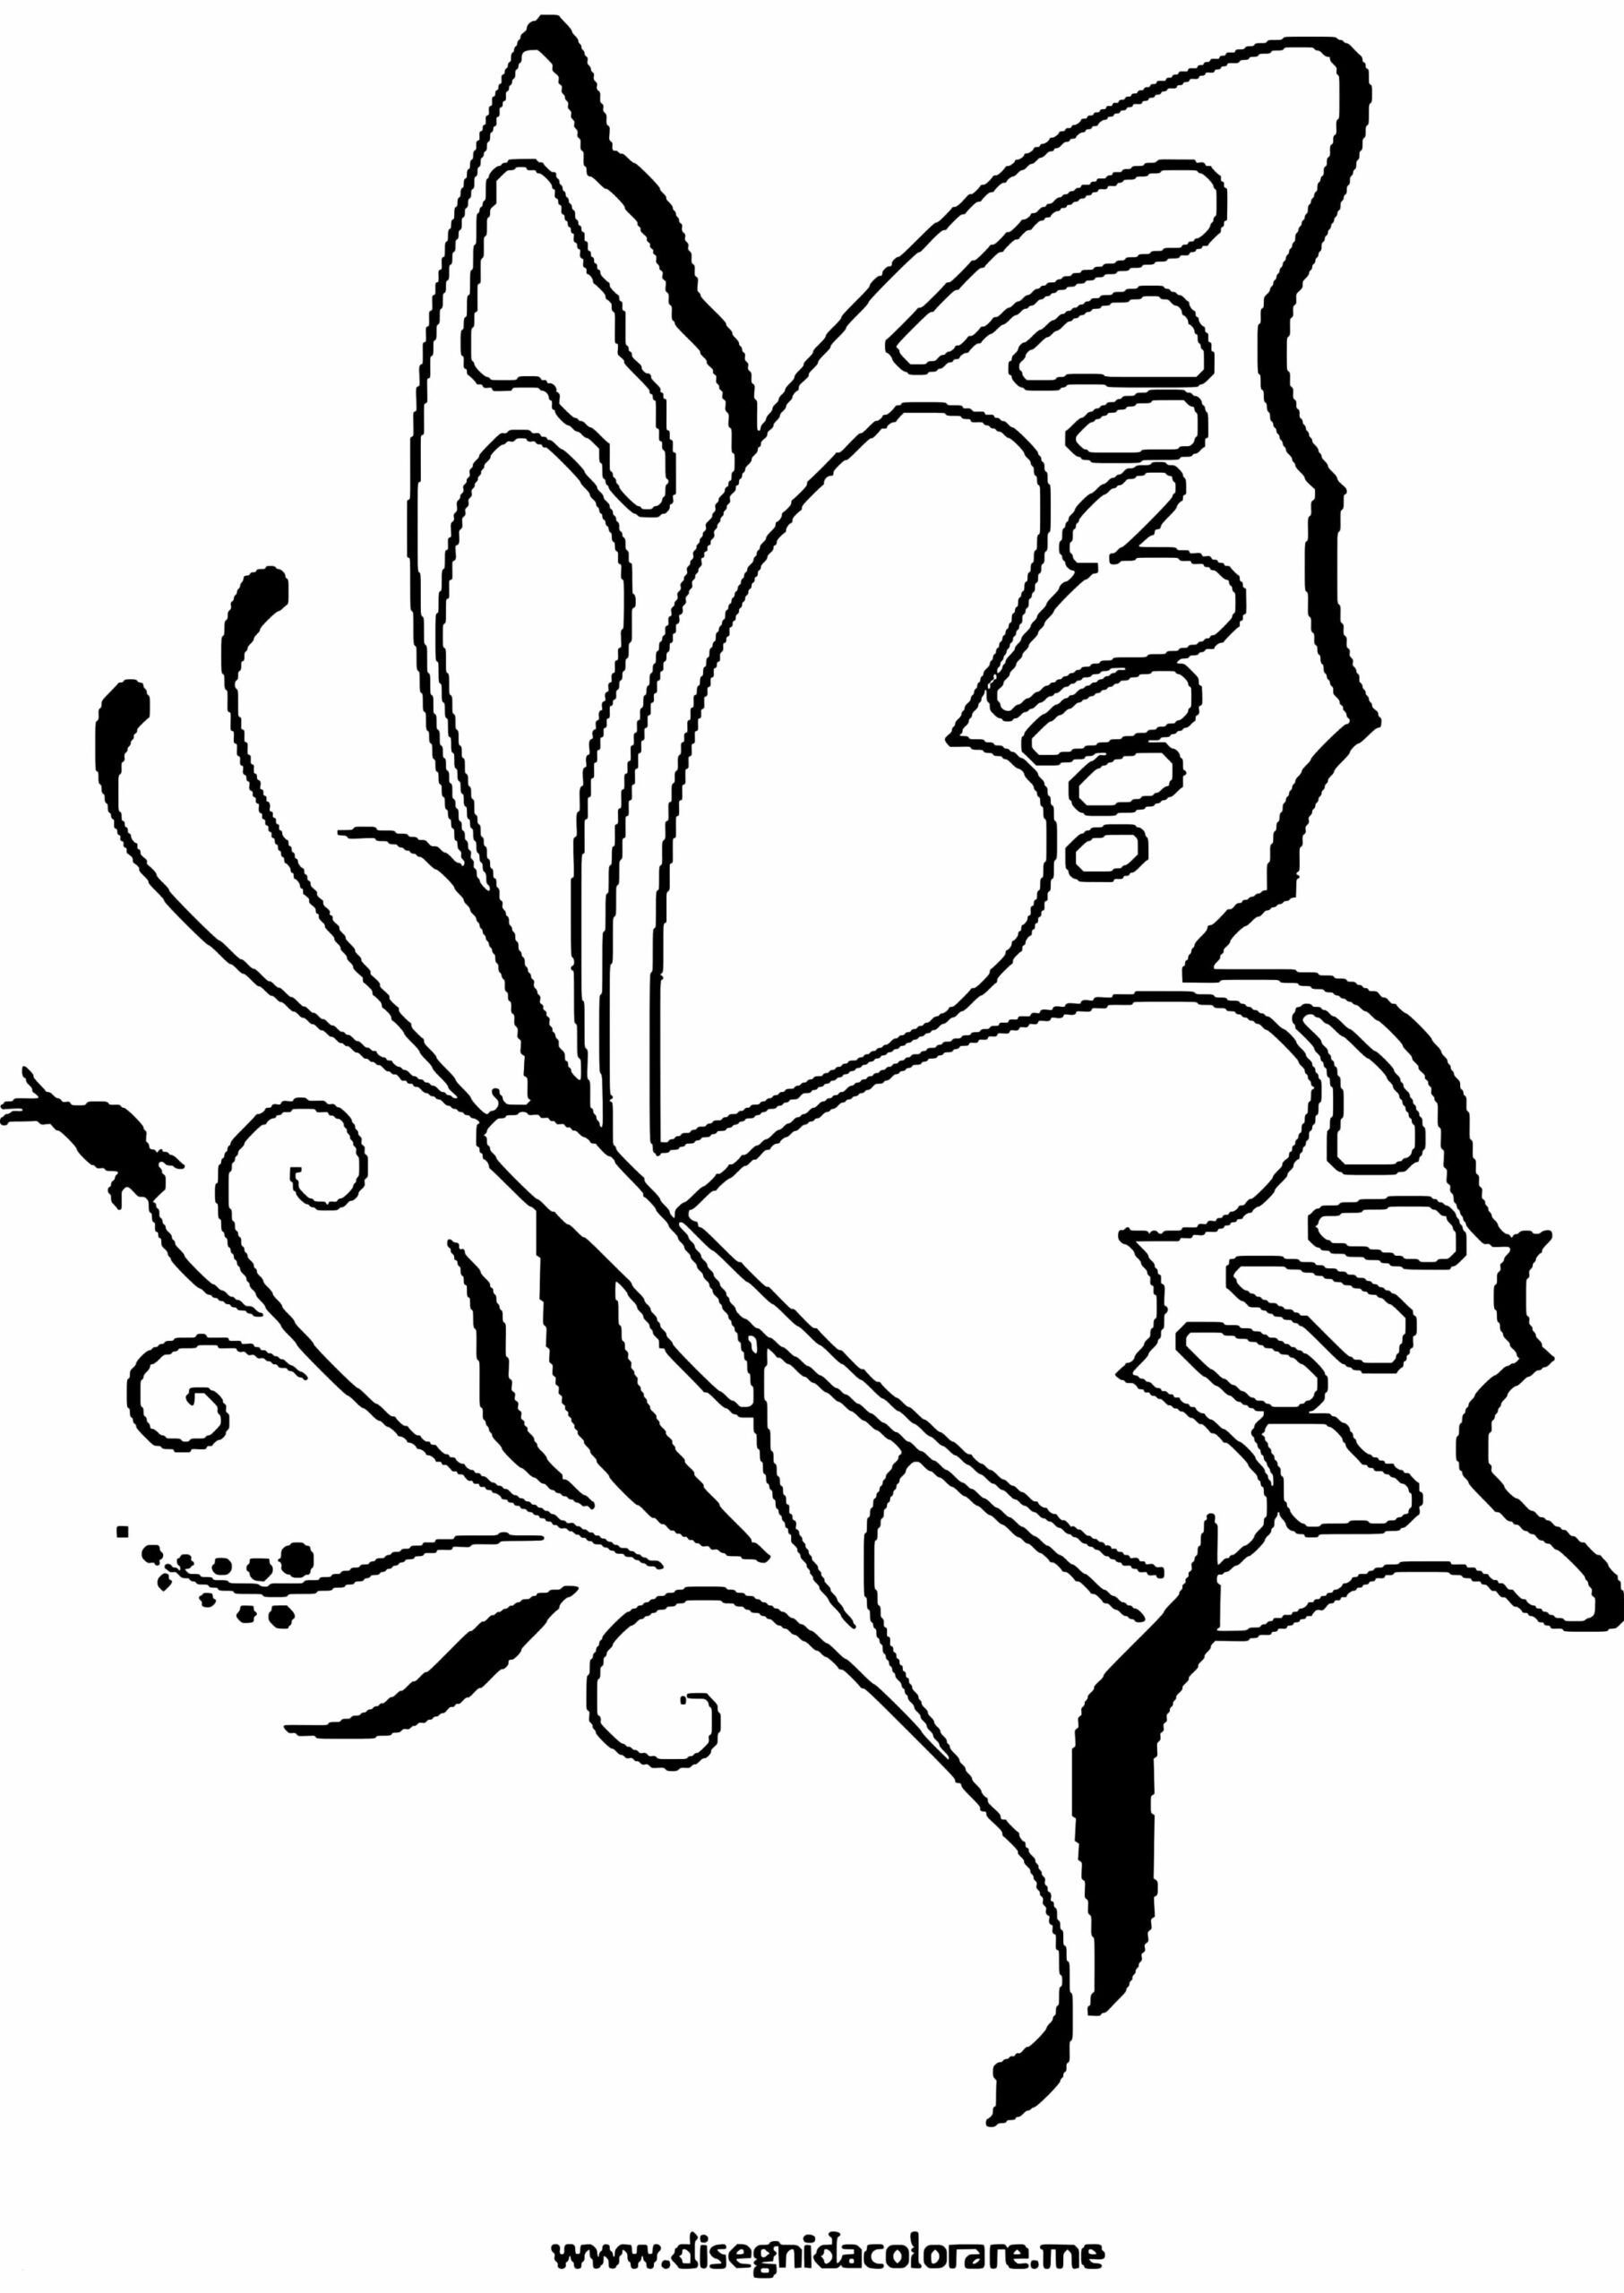 Трафареты цветов и бабочек